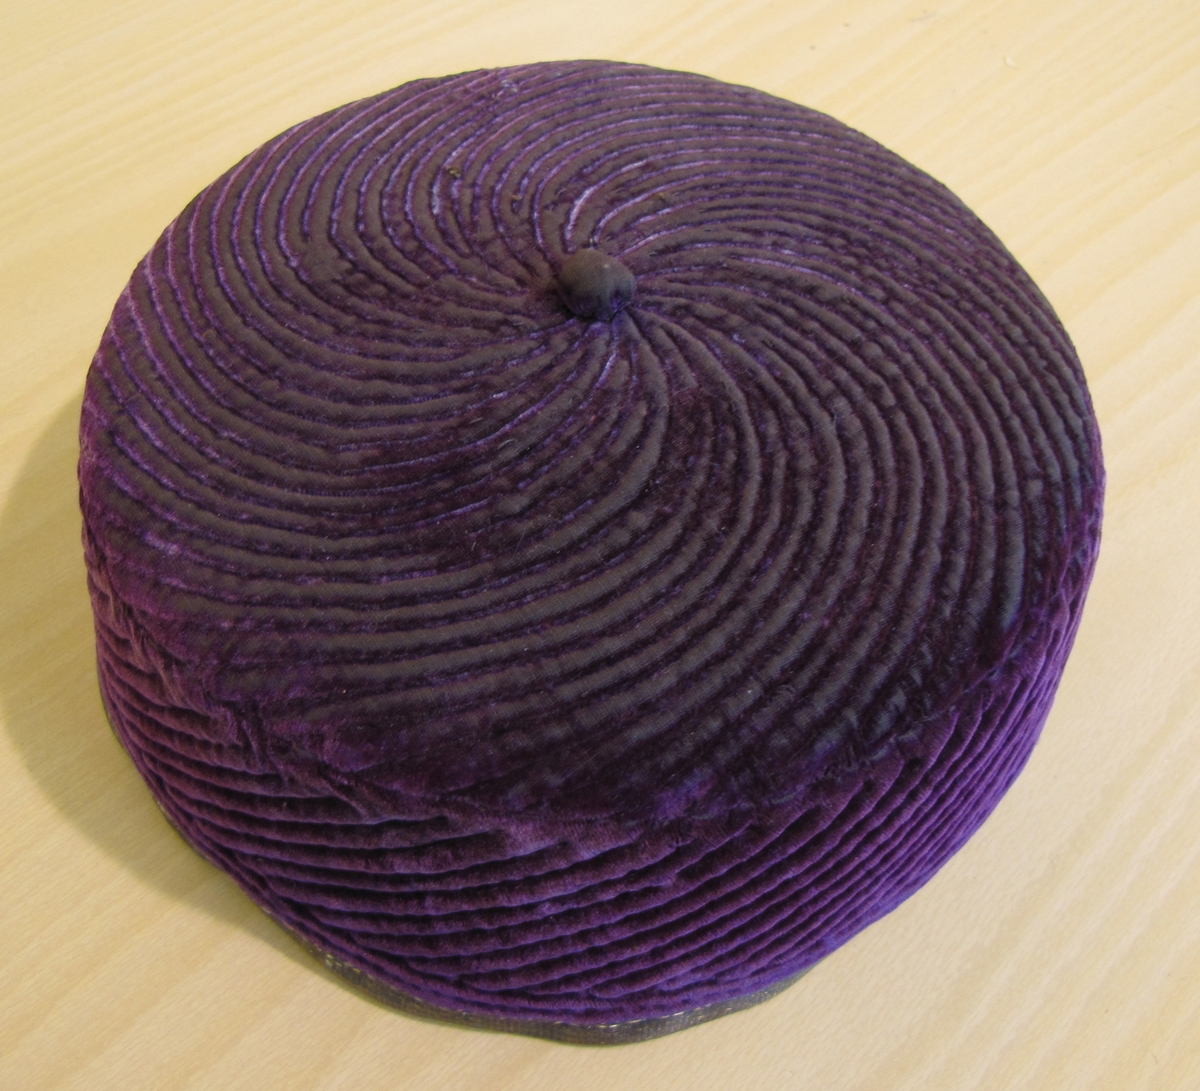 Liten violett hatt med knopp och blommigt foder.

Tillhör ryska samlingen.